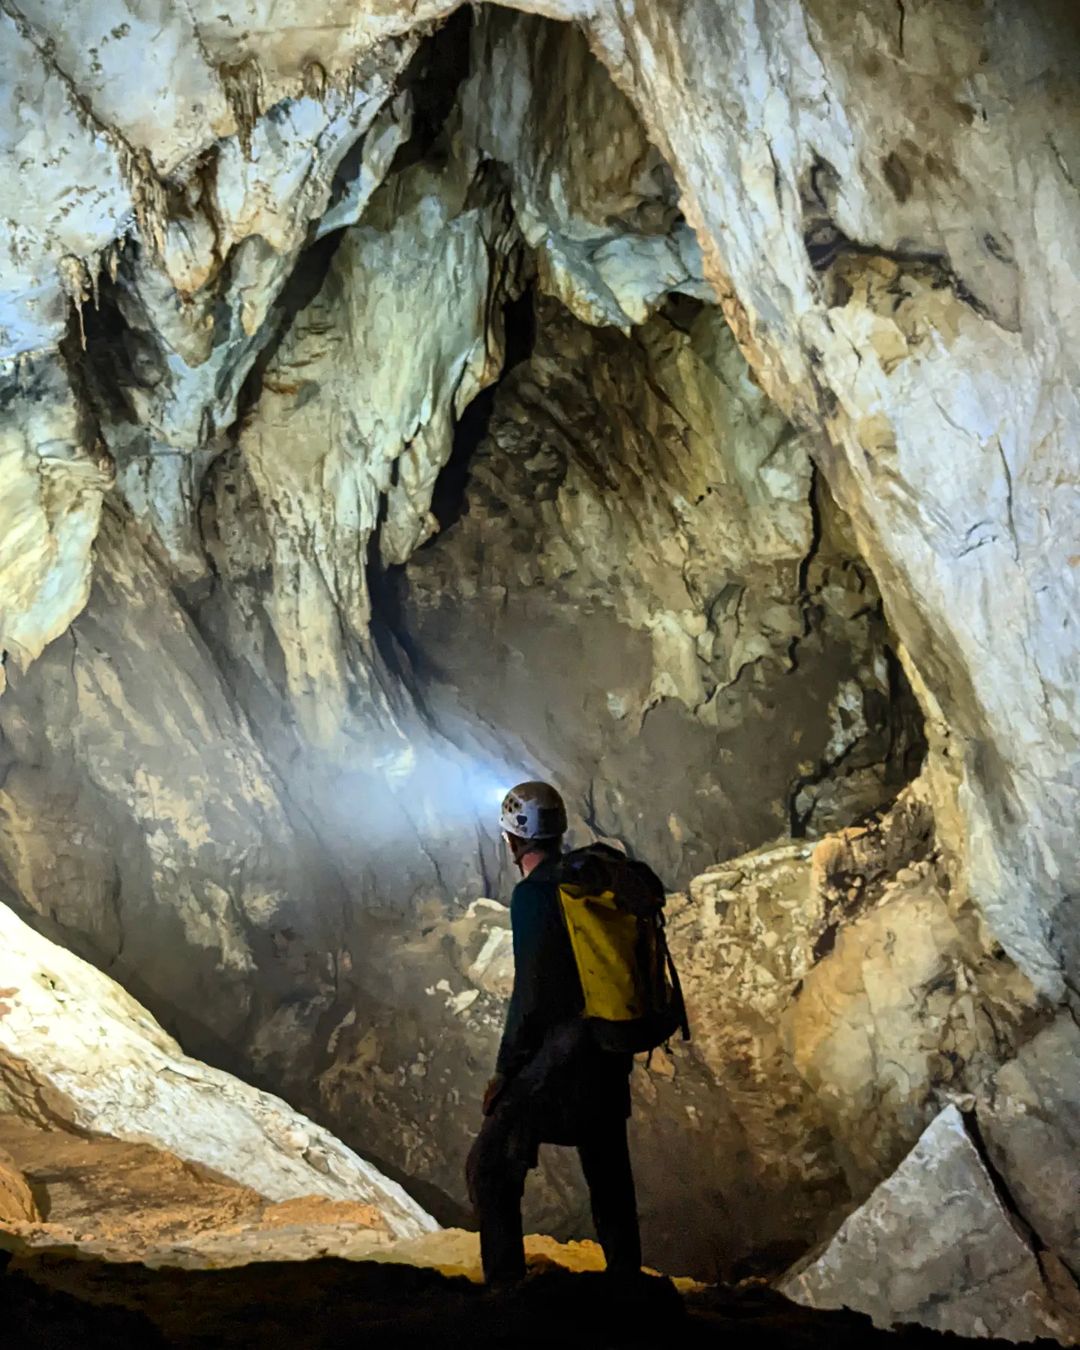 Gunung Malu Cave in Miri, Malaysia